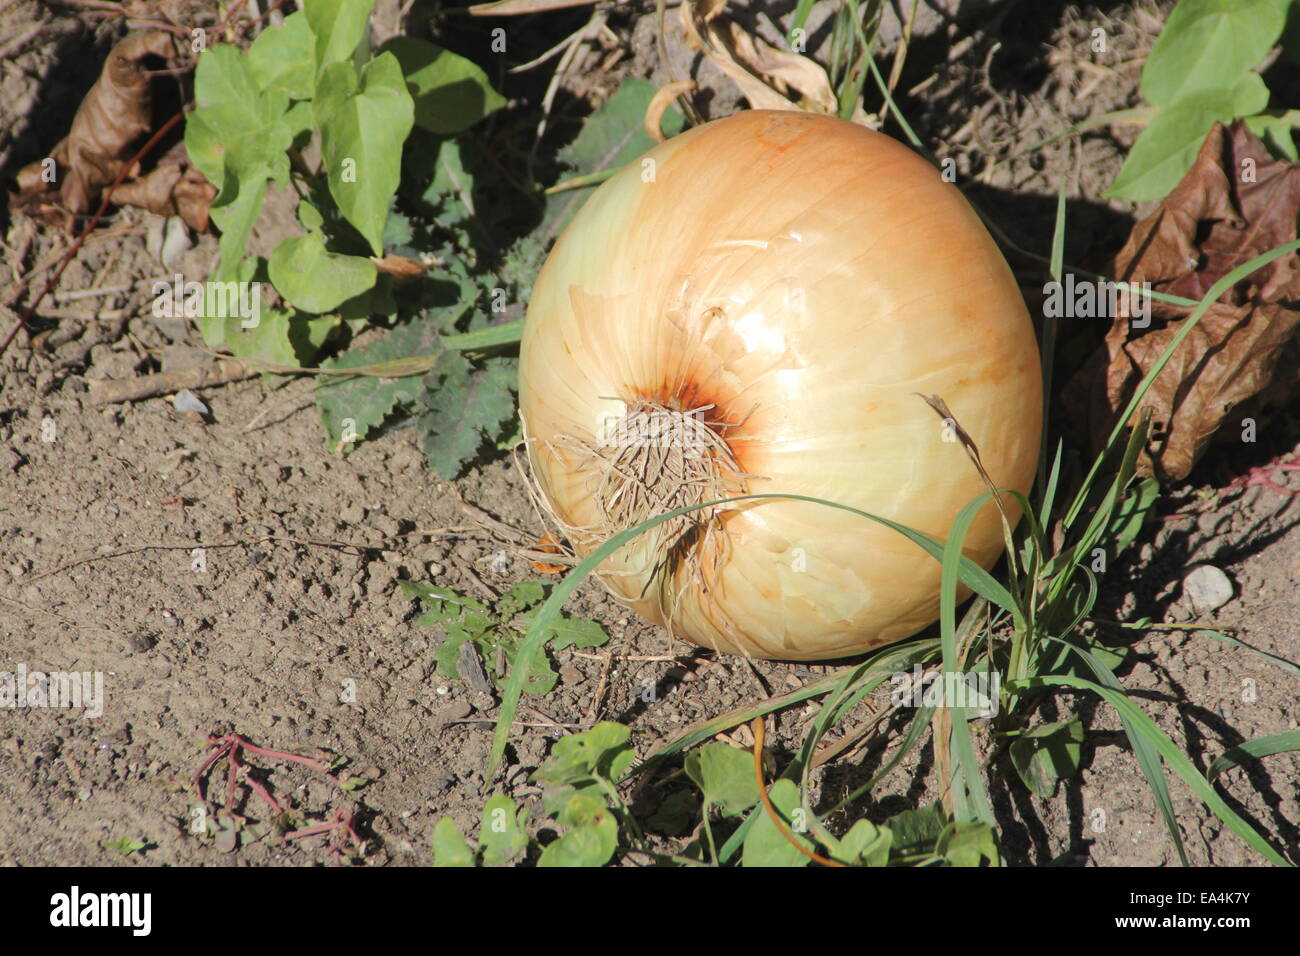 Di grandi dimensioni, cipolla dolce ancora sullo sporco dal giardino. Foto Stock